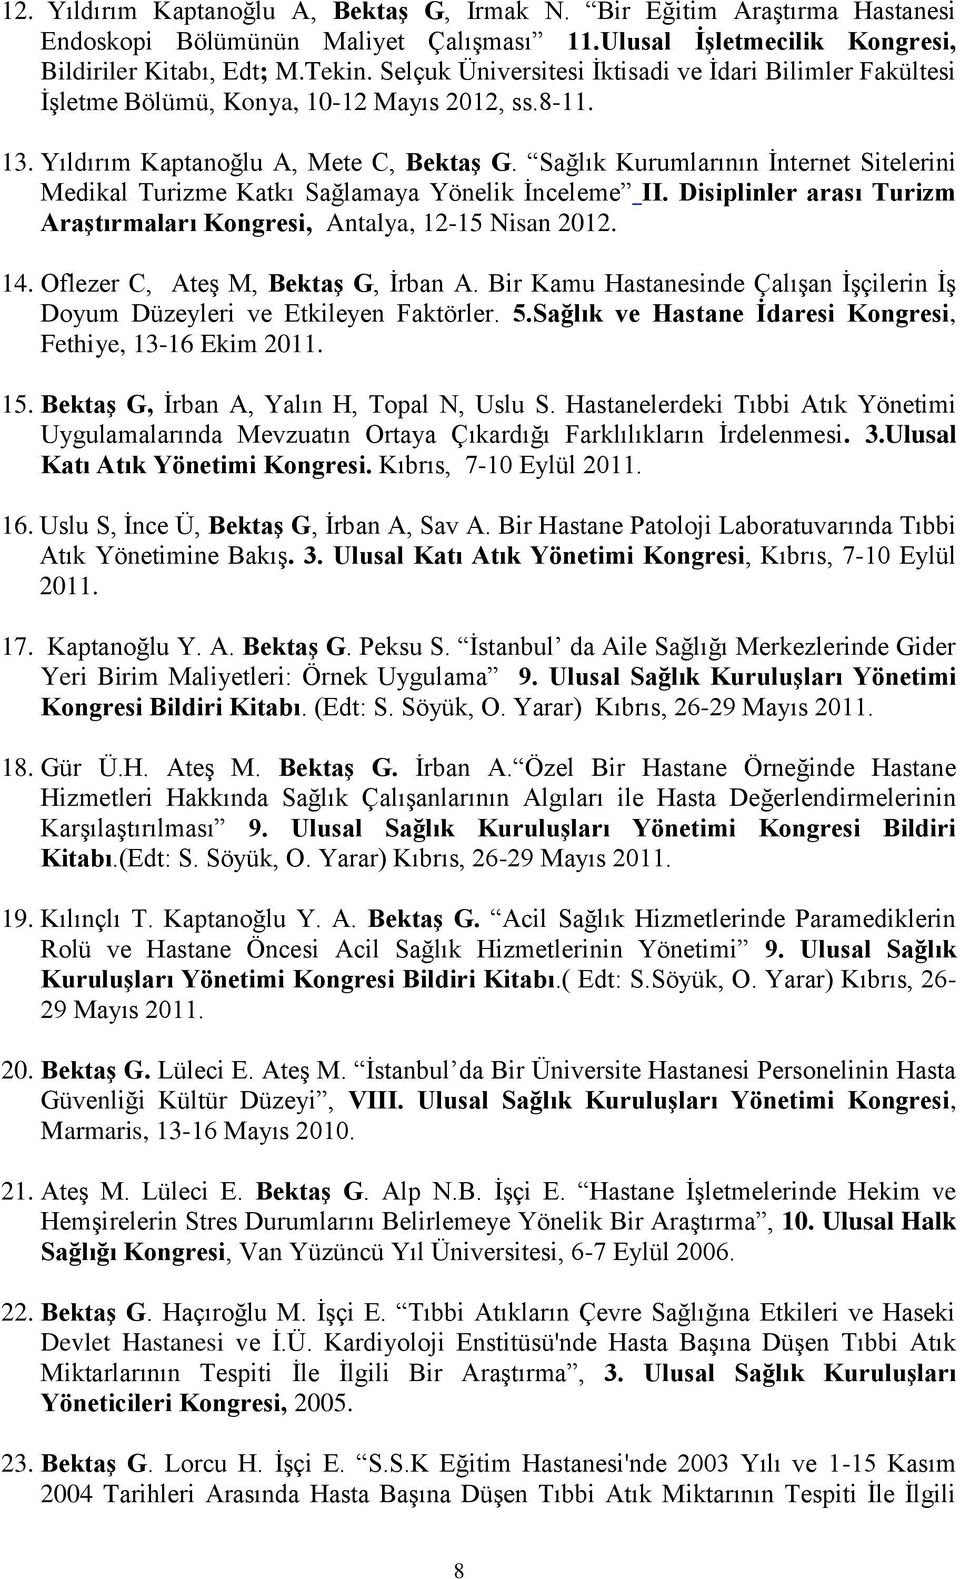 Sağlık Kurumlarının İnternet Sitelerini Medikal Turizme Katkı Sağlamaya Yönelik İnceleme II. Disiplinler arası Turizm Araştırmaları Kongresi, Antalya, 12-15 Nisan 2012. 14.